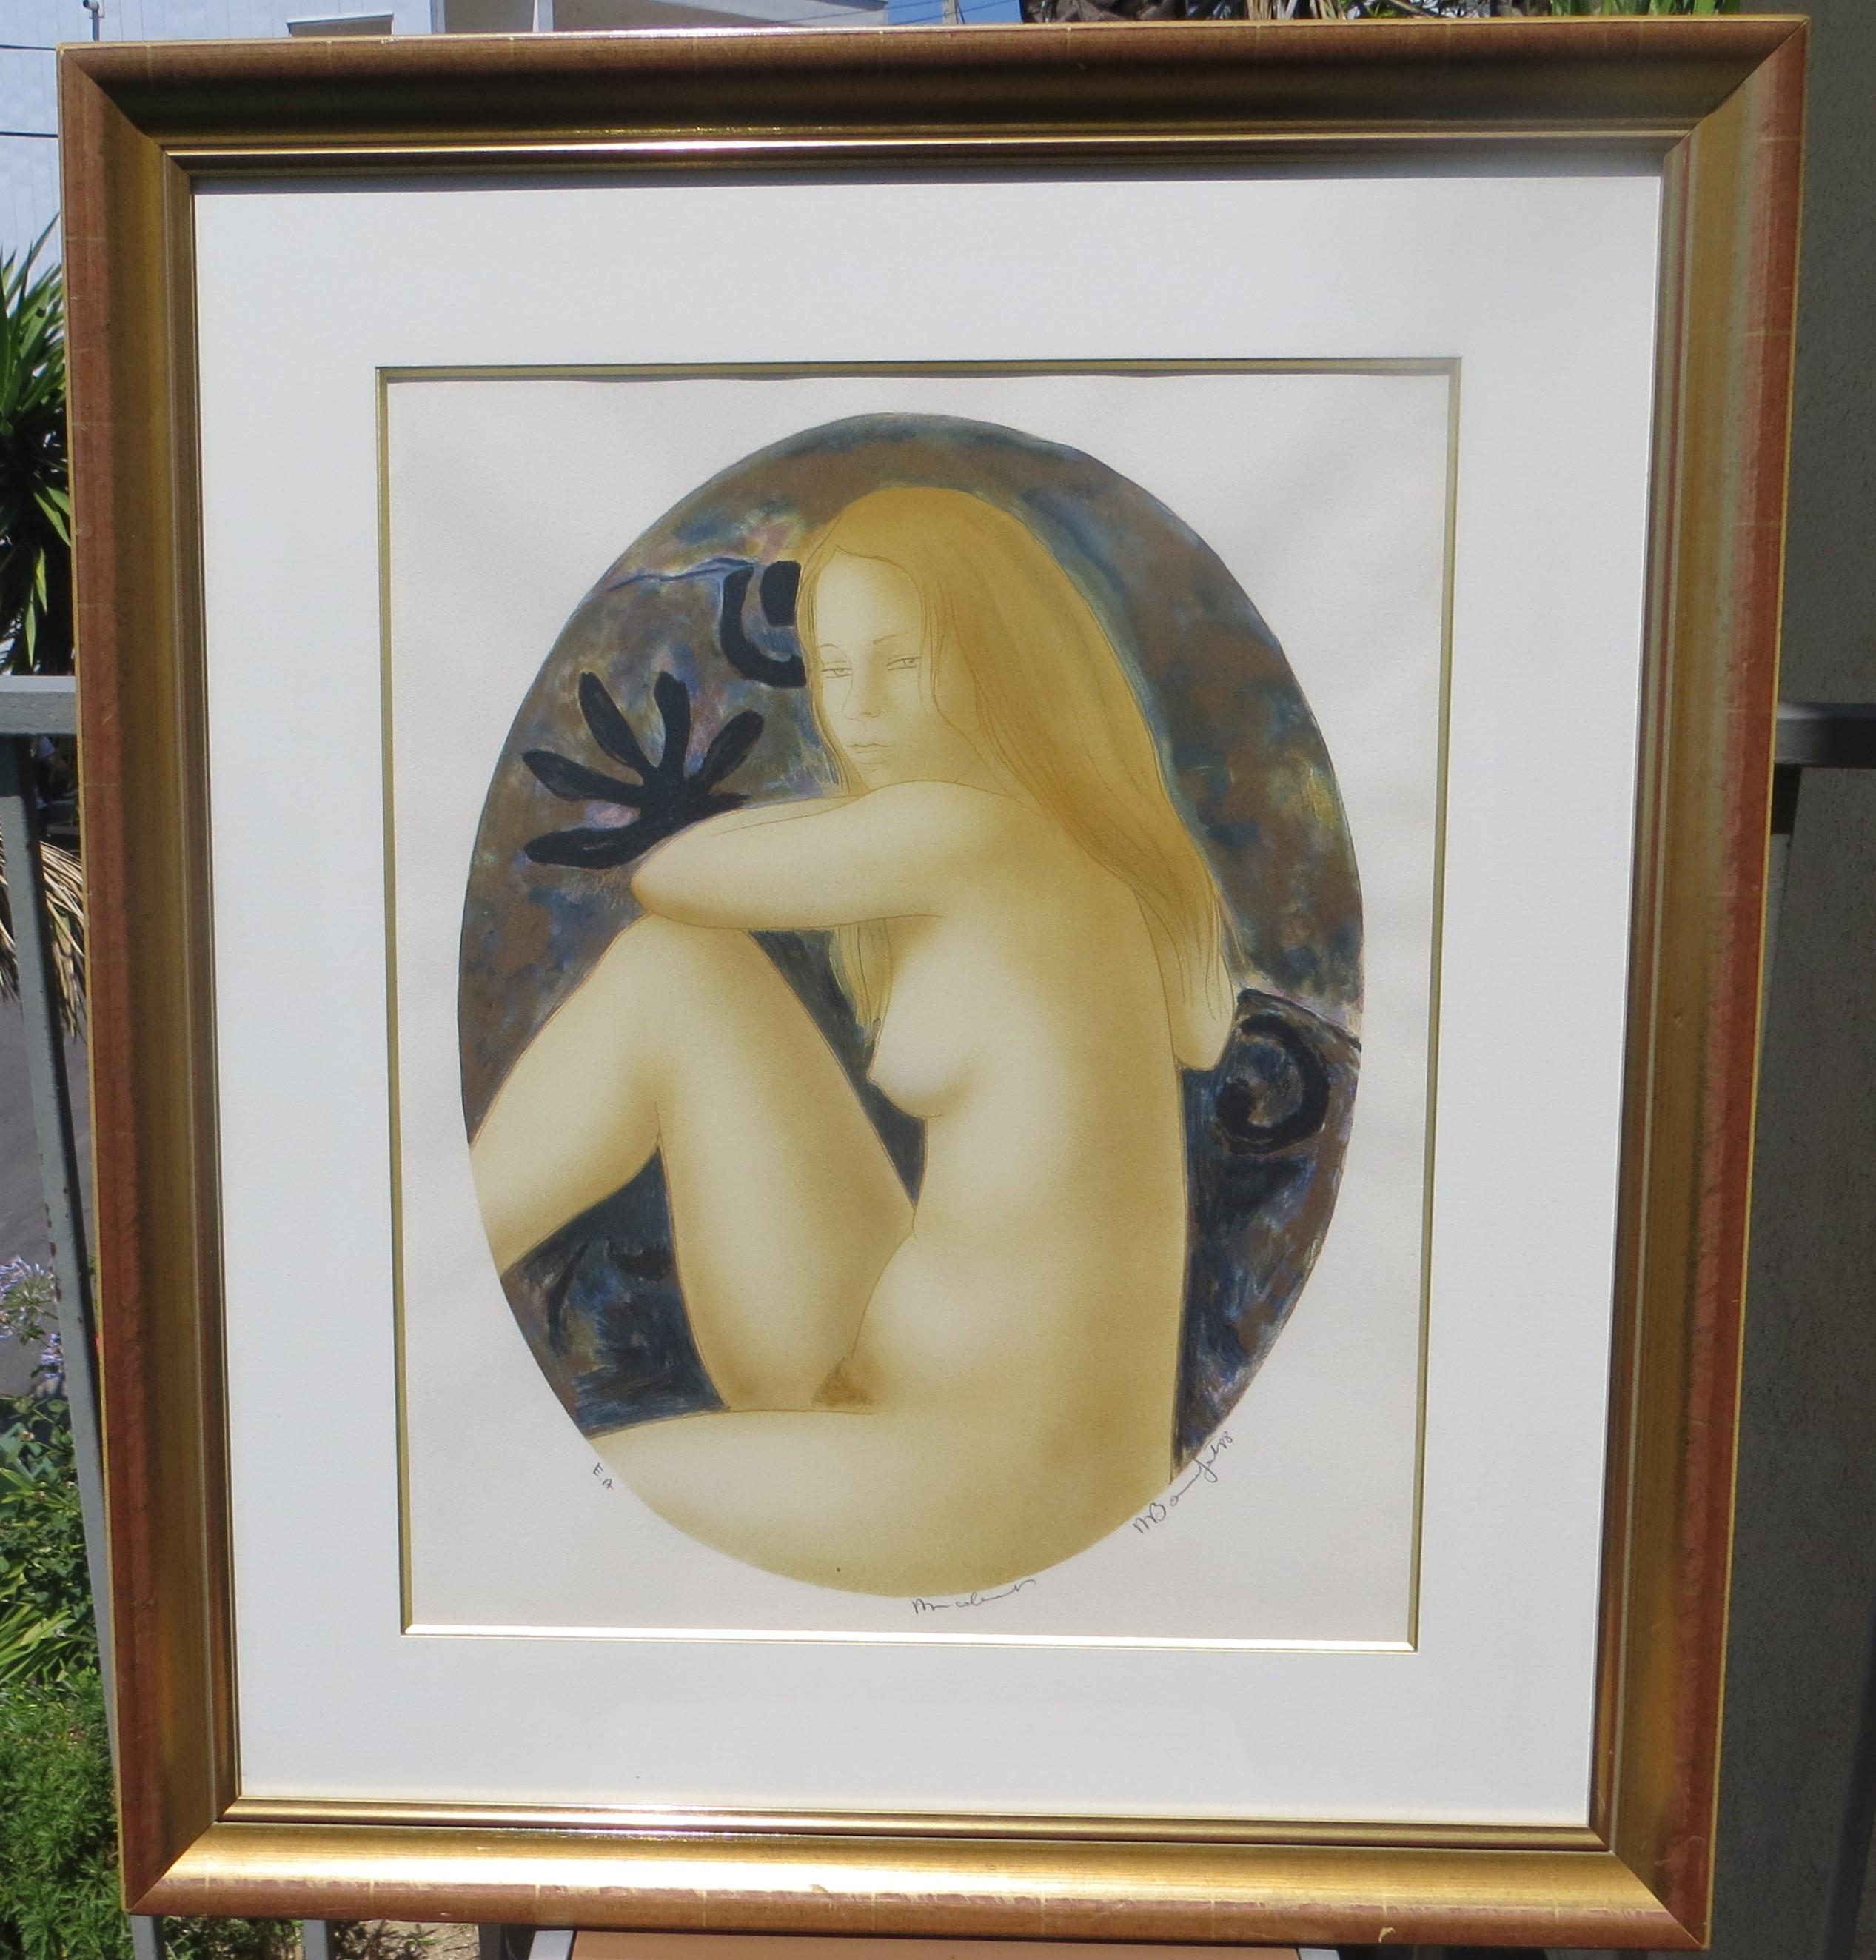 Original Lithographe EA (Epreuve d'Artiste ) Alain Bonnefoits Markenzeichen, die weiblichen Akte, spiegeln sowohl westliche als auch östliche kunsthistorische Einflüsse wider. Als Maler, Graveur und Bildhauer wurde Bonnefoit von dem Bildhauer